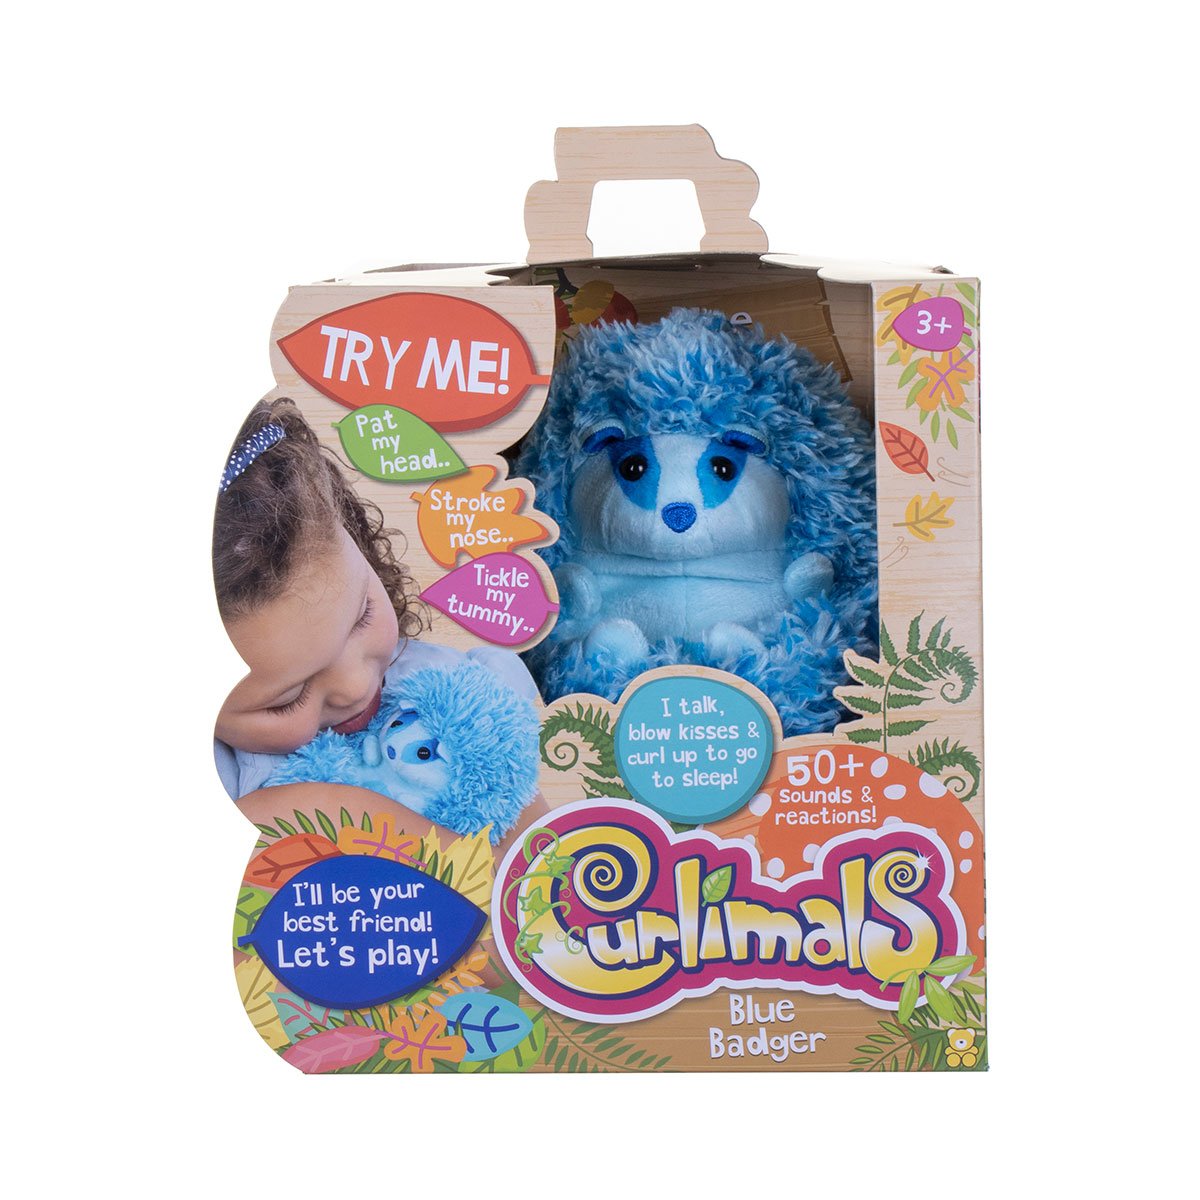 Інтерактивна іграшка Curlimals Барсук Блу (3710) - фото 11